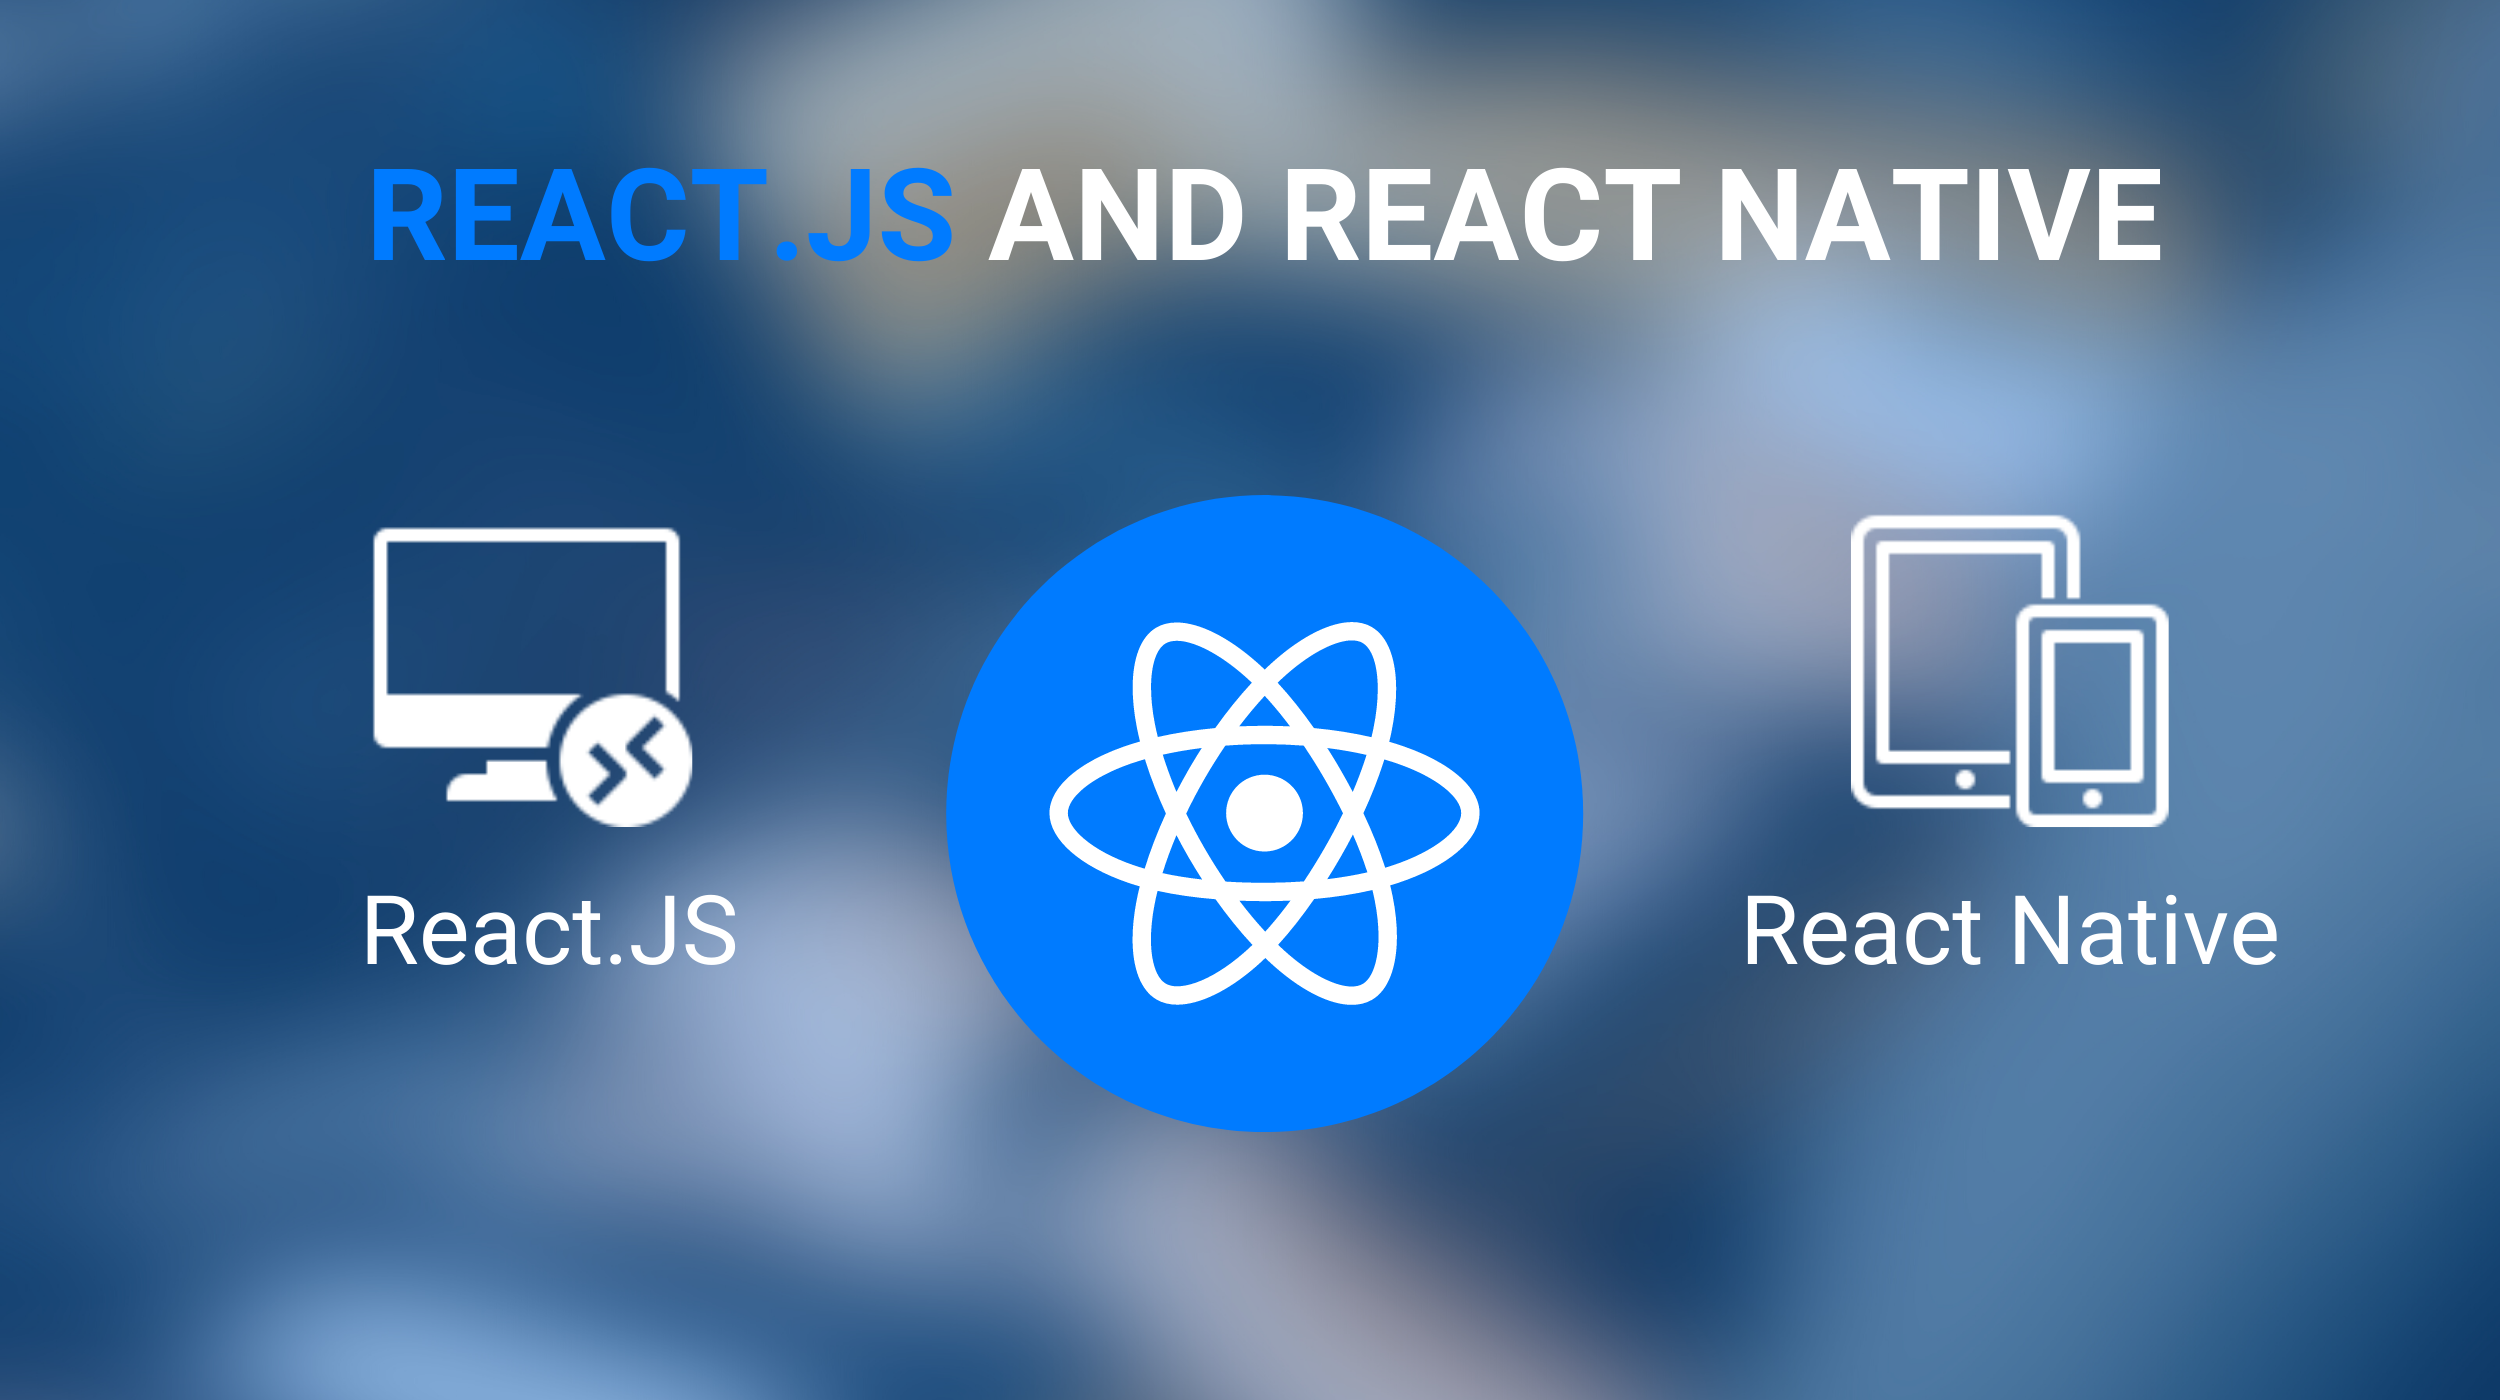 React.js and React Native